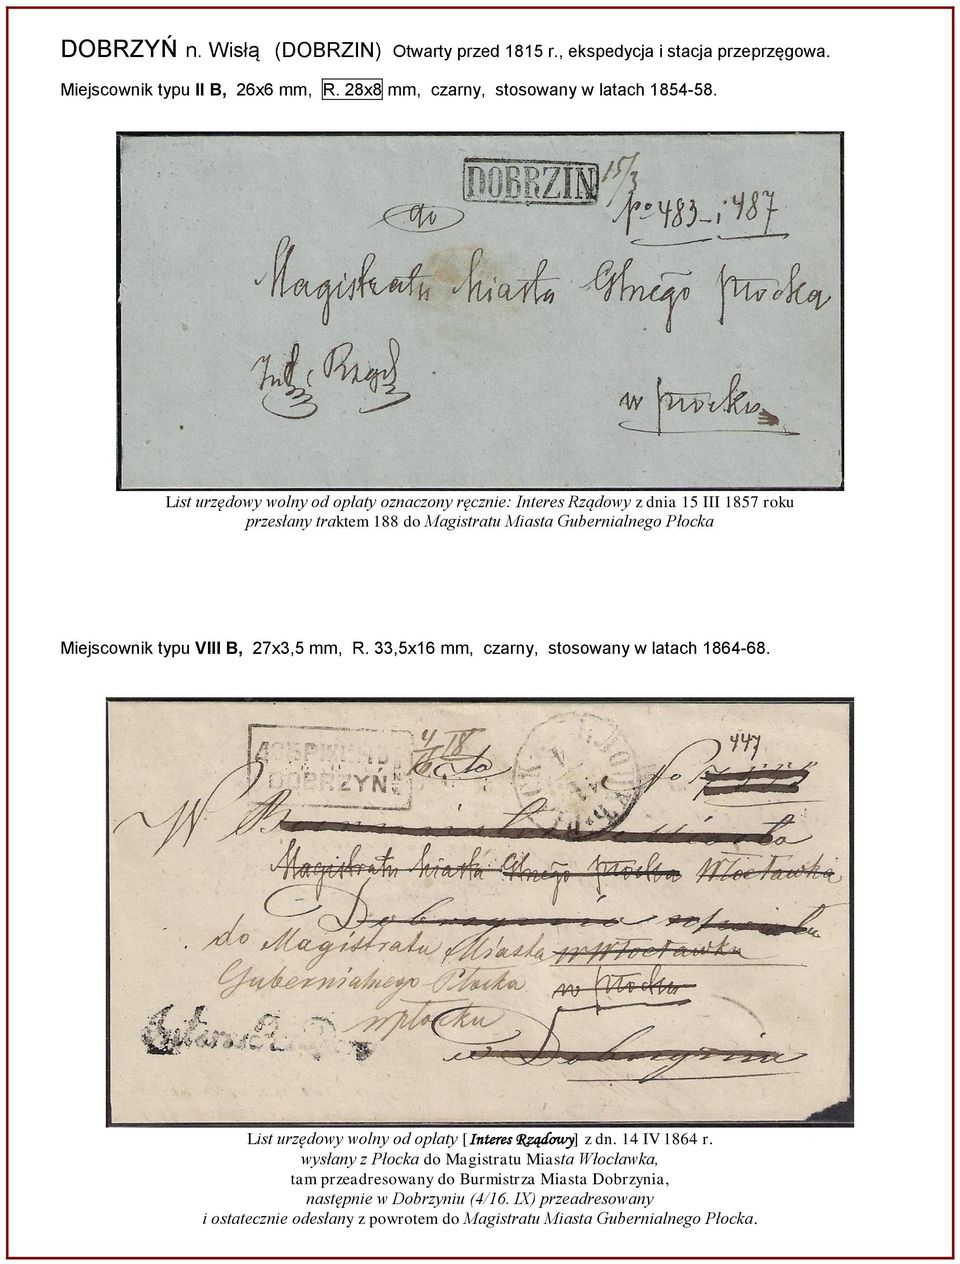 VIII B, 27x3,5 mm, R. 33,5x16 mm, czarny, stosowany w latach 1864-68. List urzędowy wolny od opłaty [Interes Rządowy] z dn. 14 IV 1864 r.